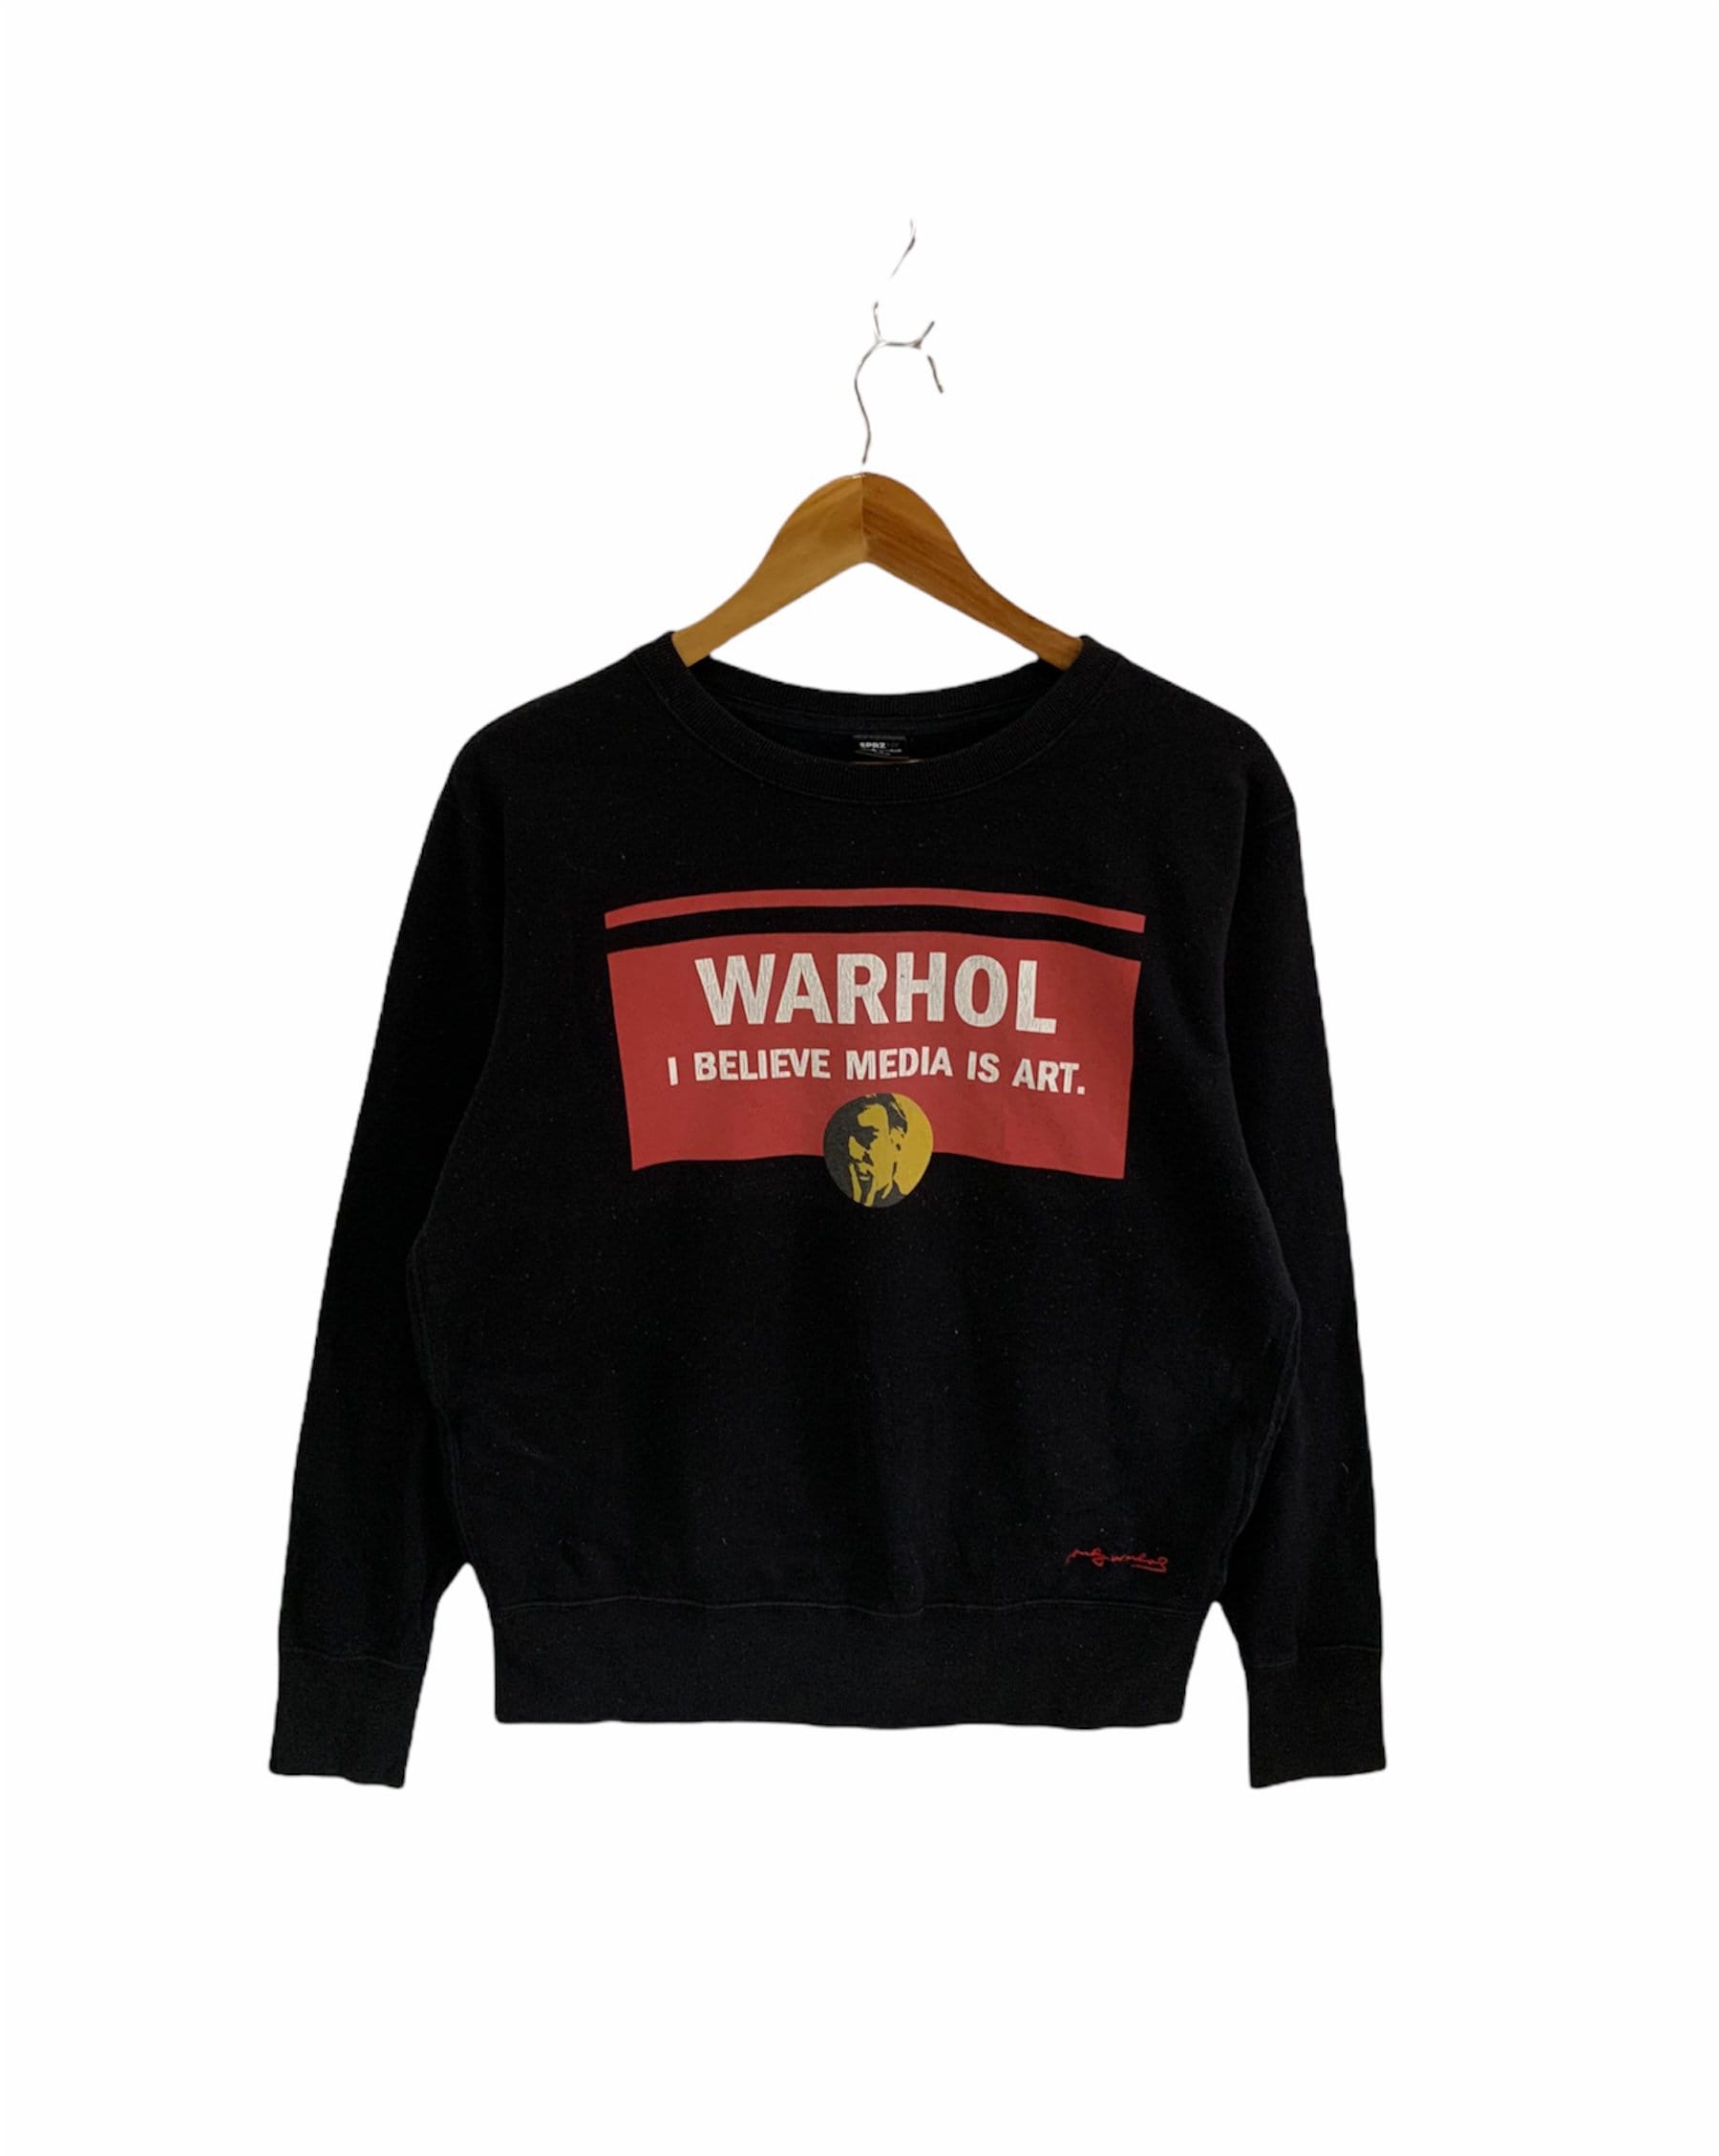 Vintage Andy Warhol Sweatshirt Großes Logo Uniqlo Pullover Schönes Design Mittlerer Größe von FongfongStudio